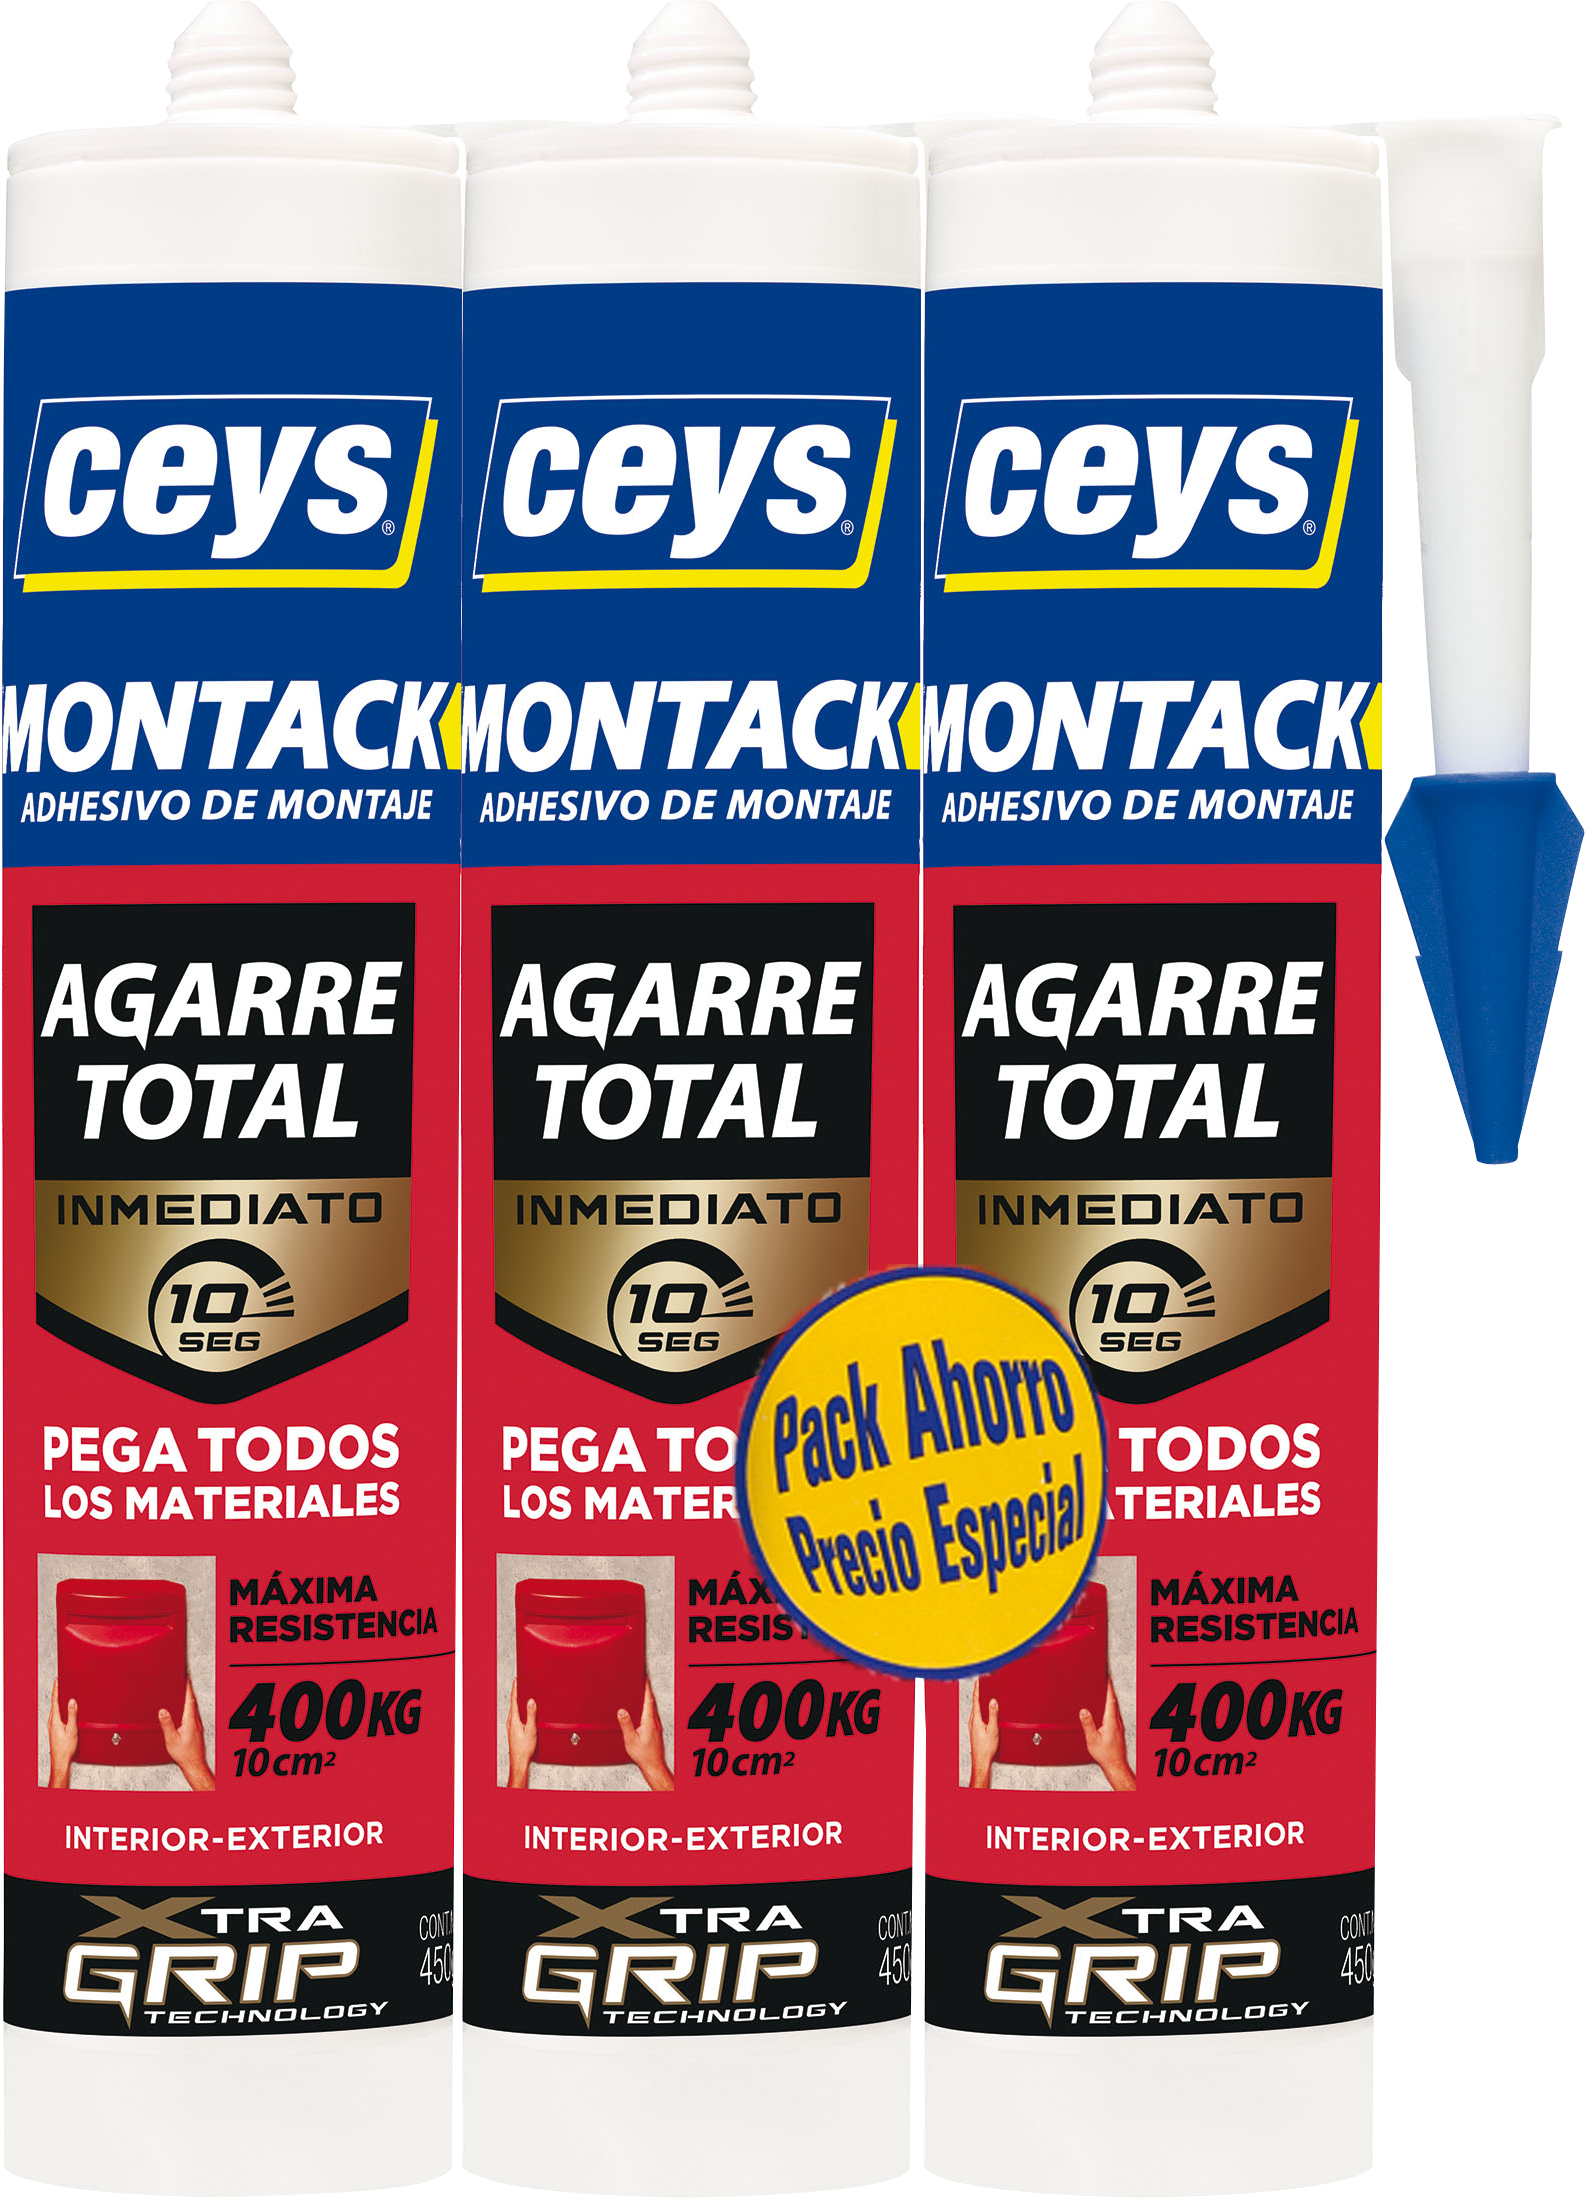 Adhesivo de montaje Montack ceys 125ml